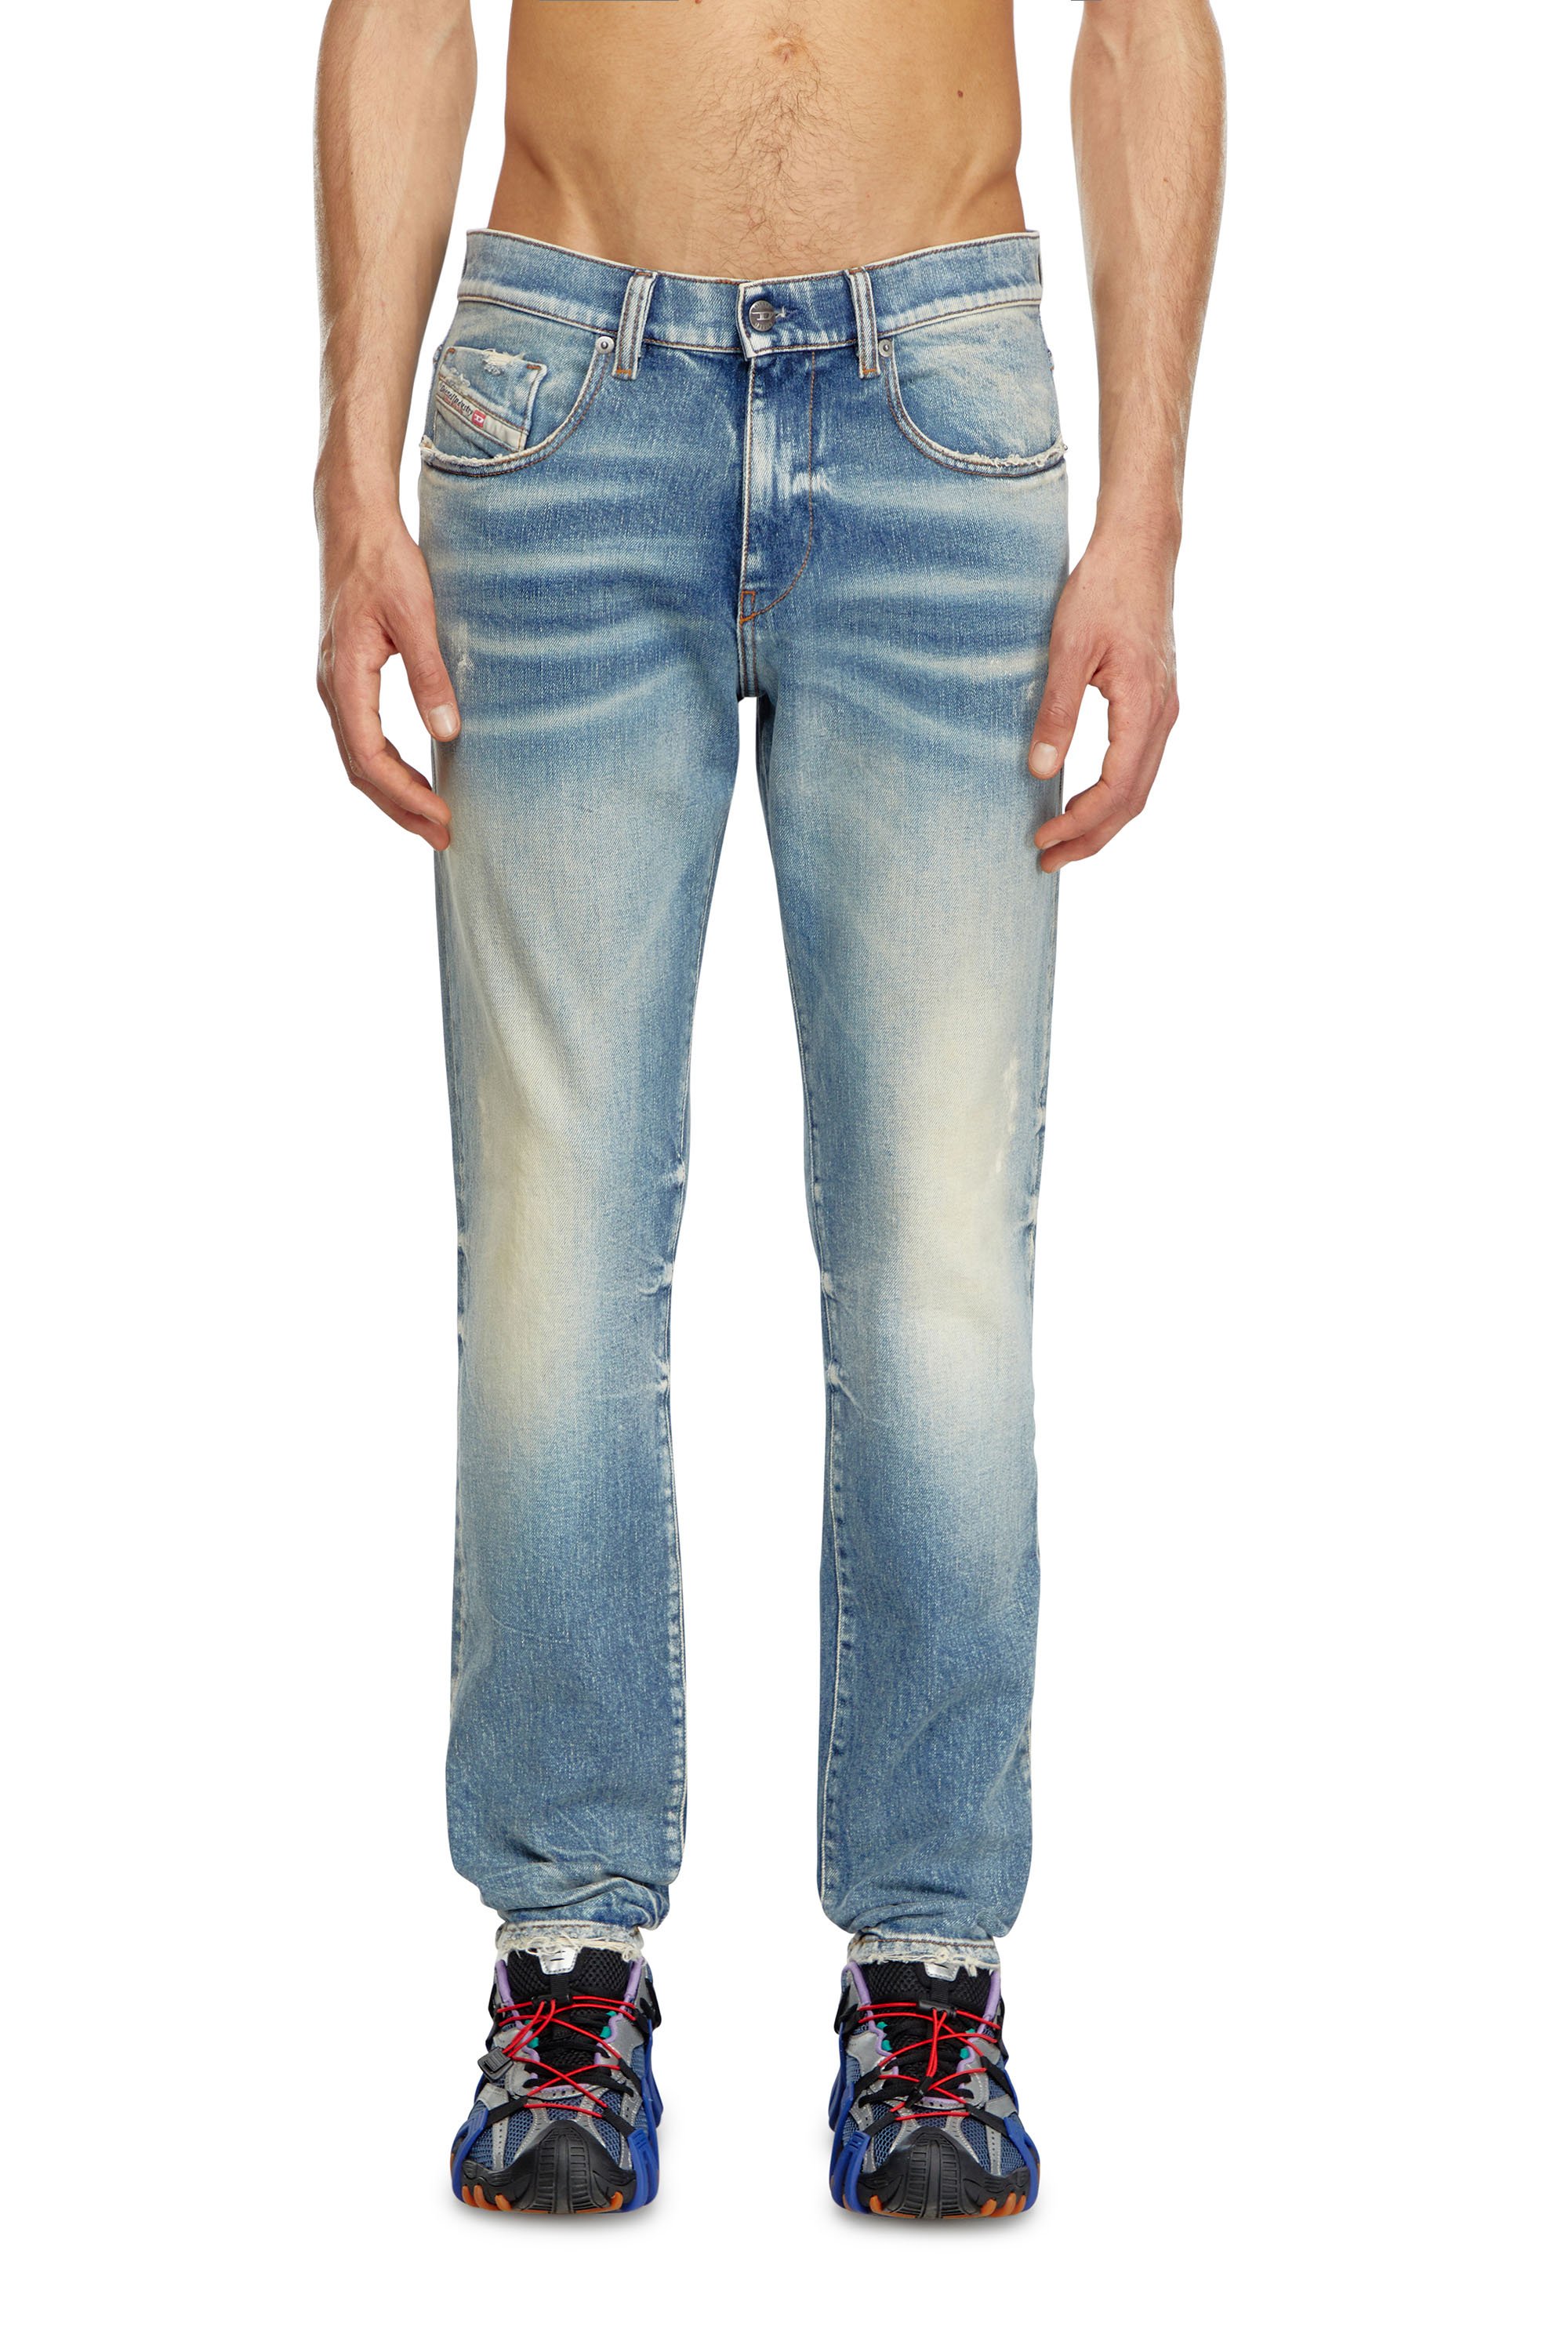 Diesel - Slim Jeans 2019 D-Strukt 007V8, Hombre Slim Jeans - 2019 D-Strukt in Azul marino - Image 1